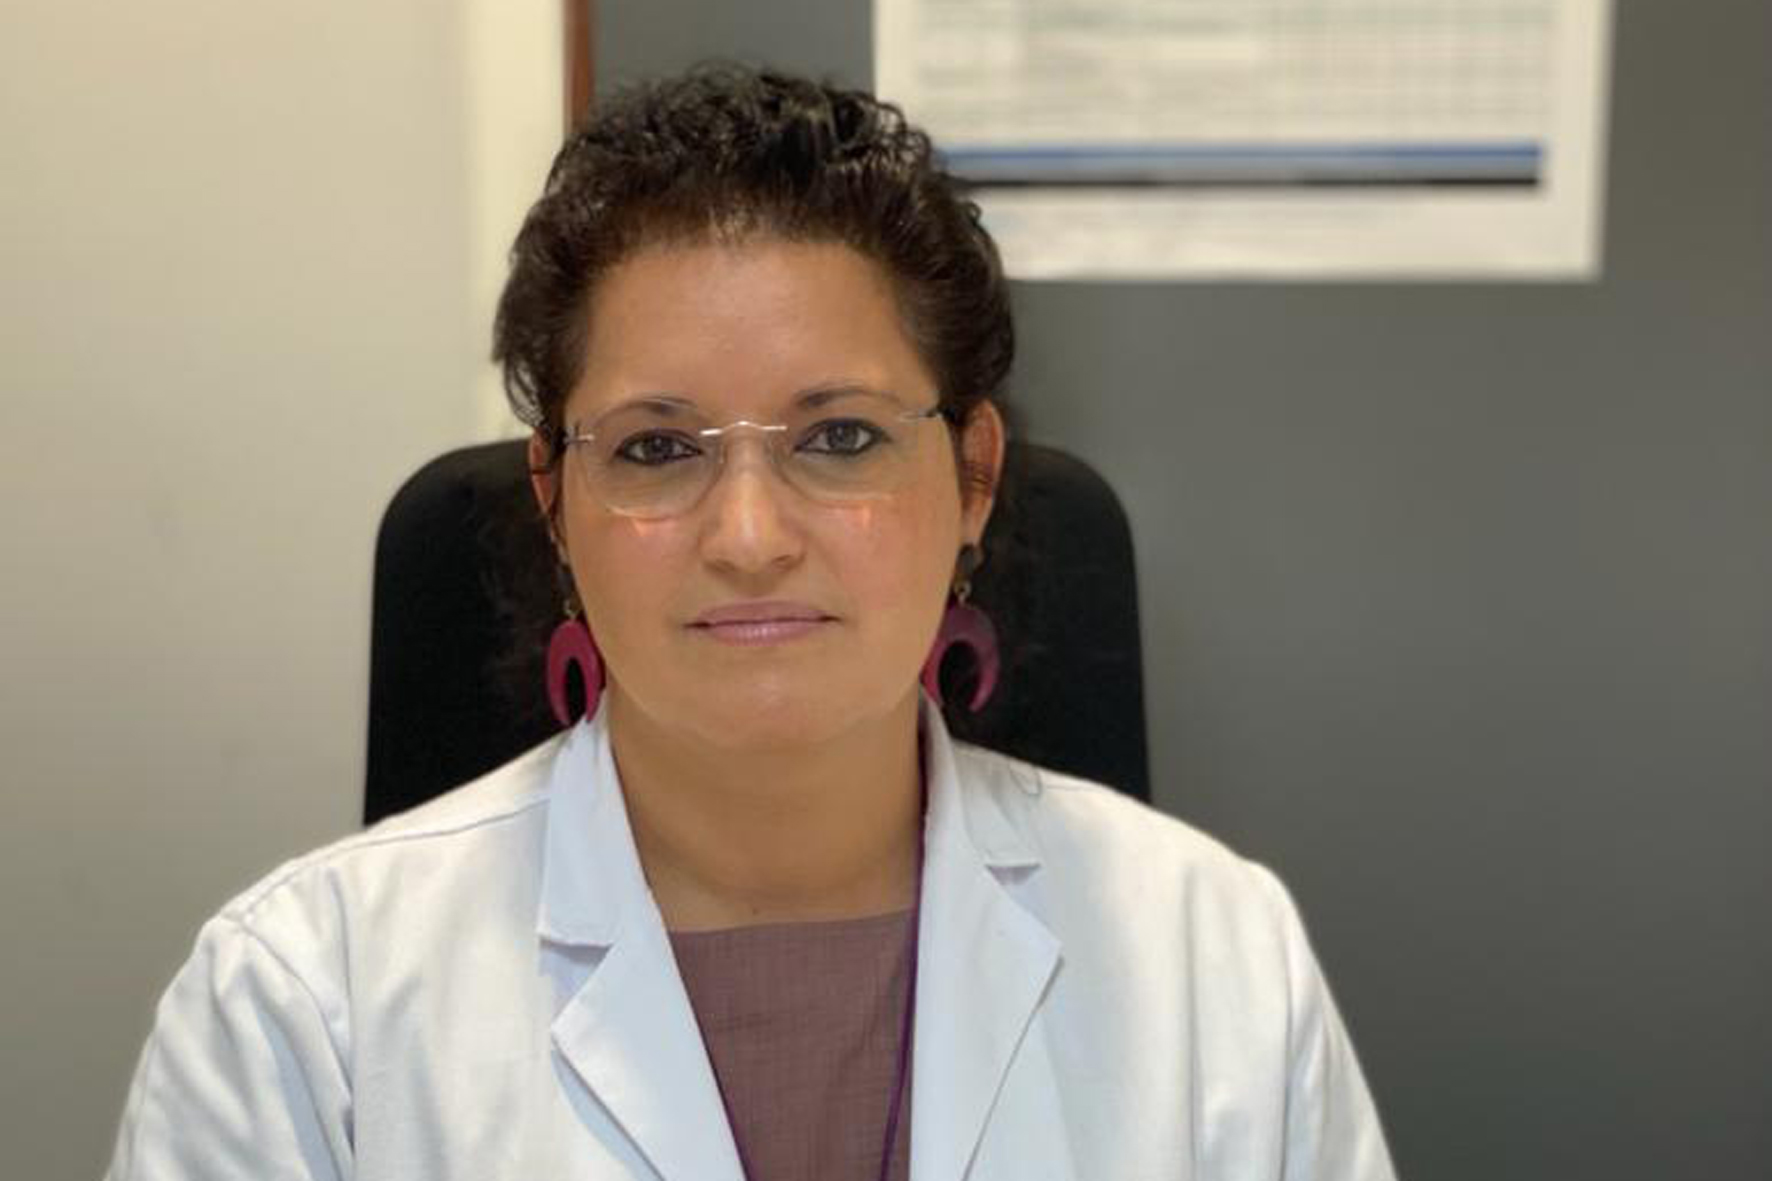 El SCS nombra a Mirkadeiny Cabrera Febles, nueva gerente de los Servicios Sanitarios de El Hierro